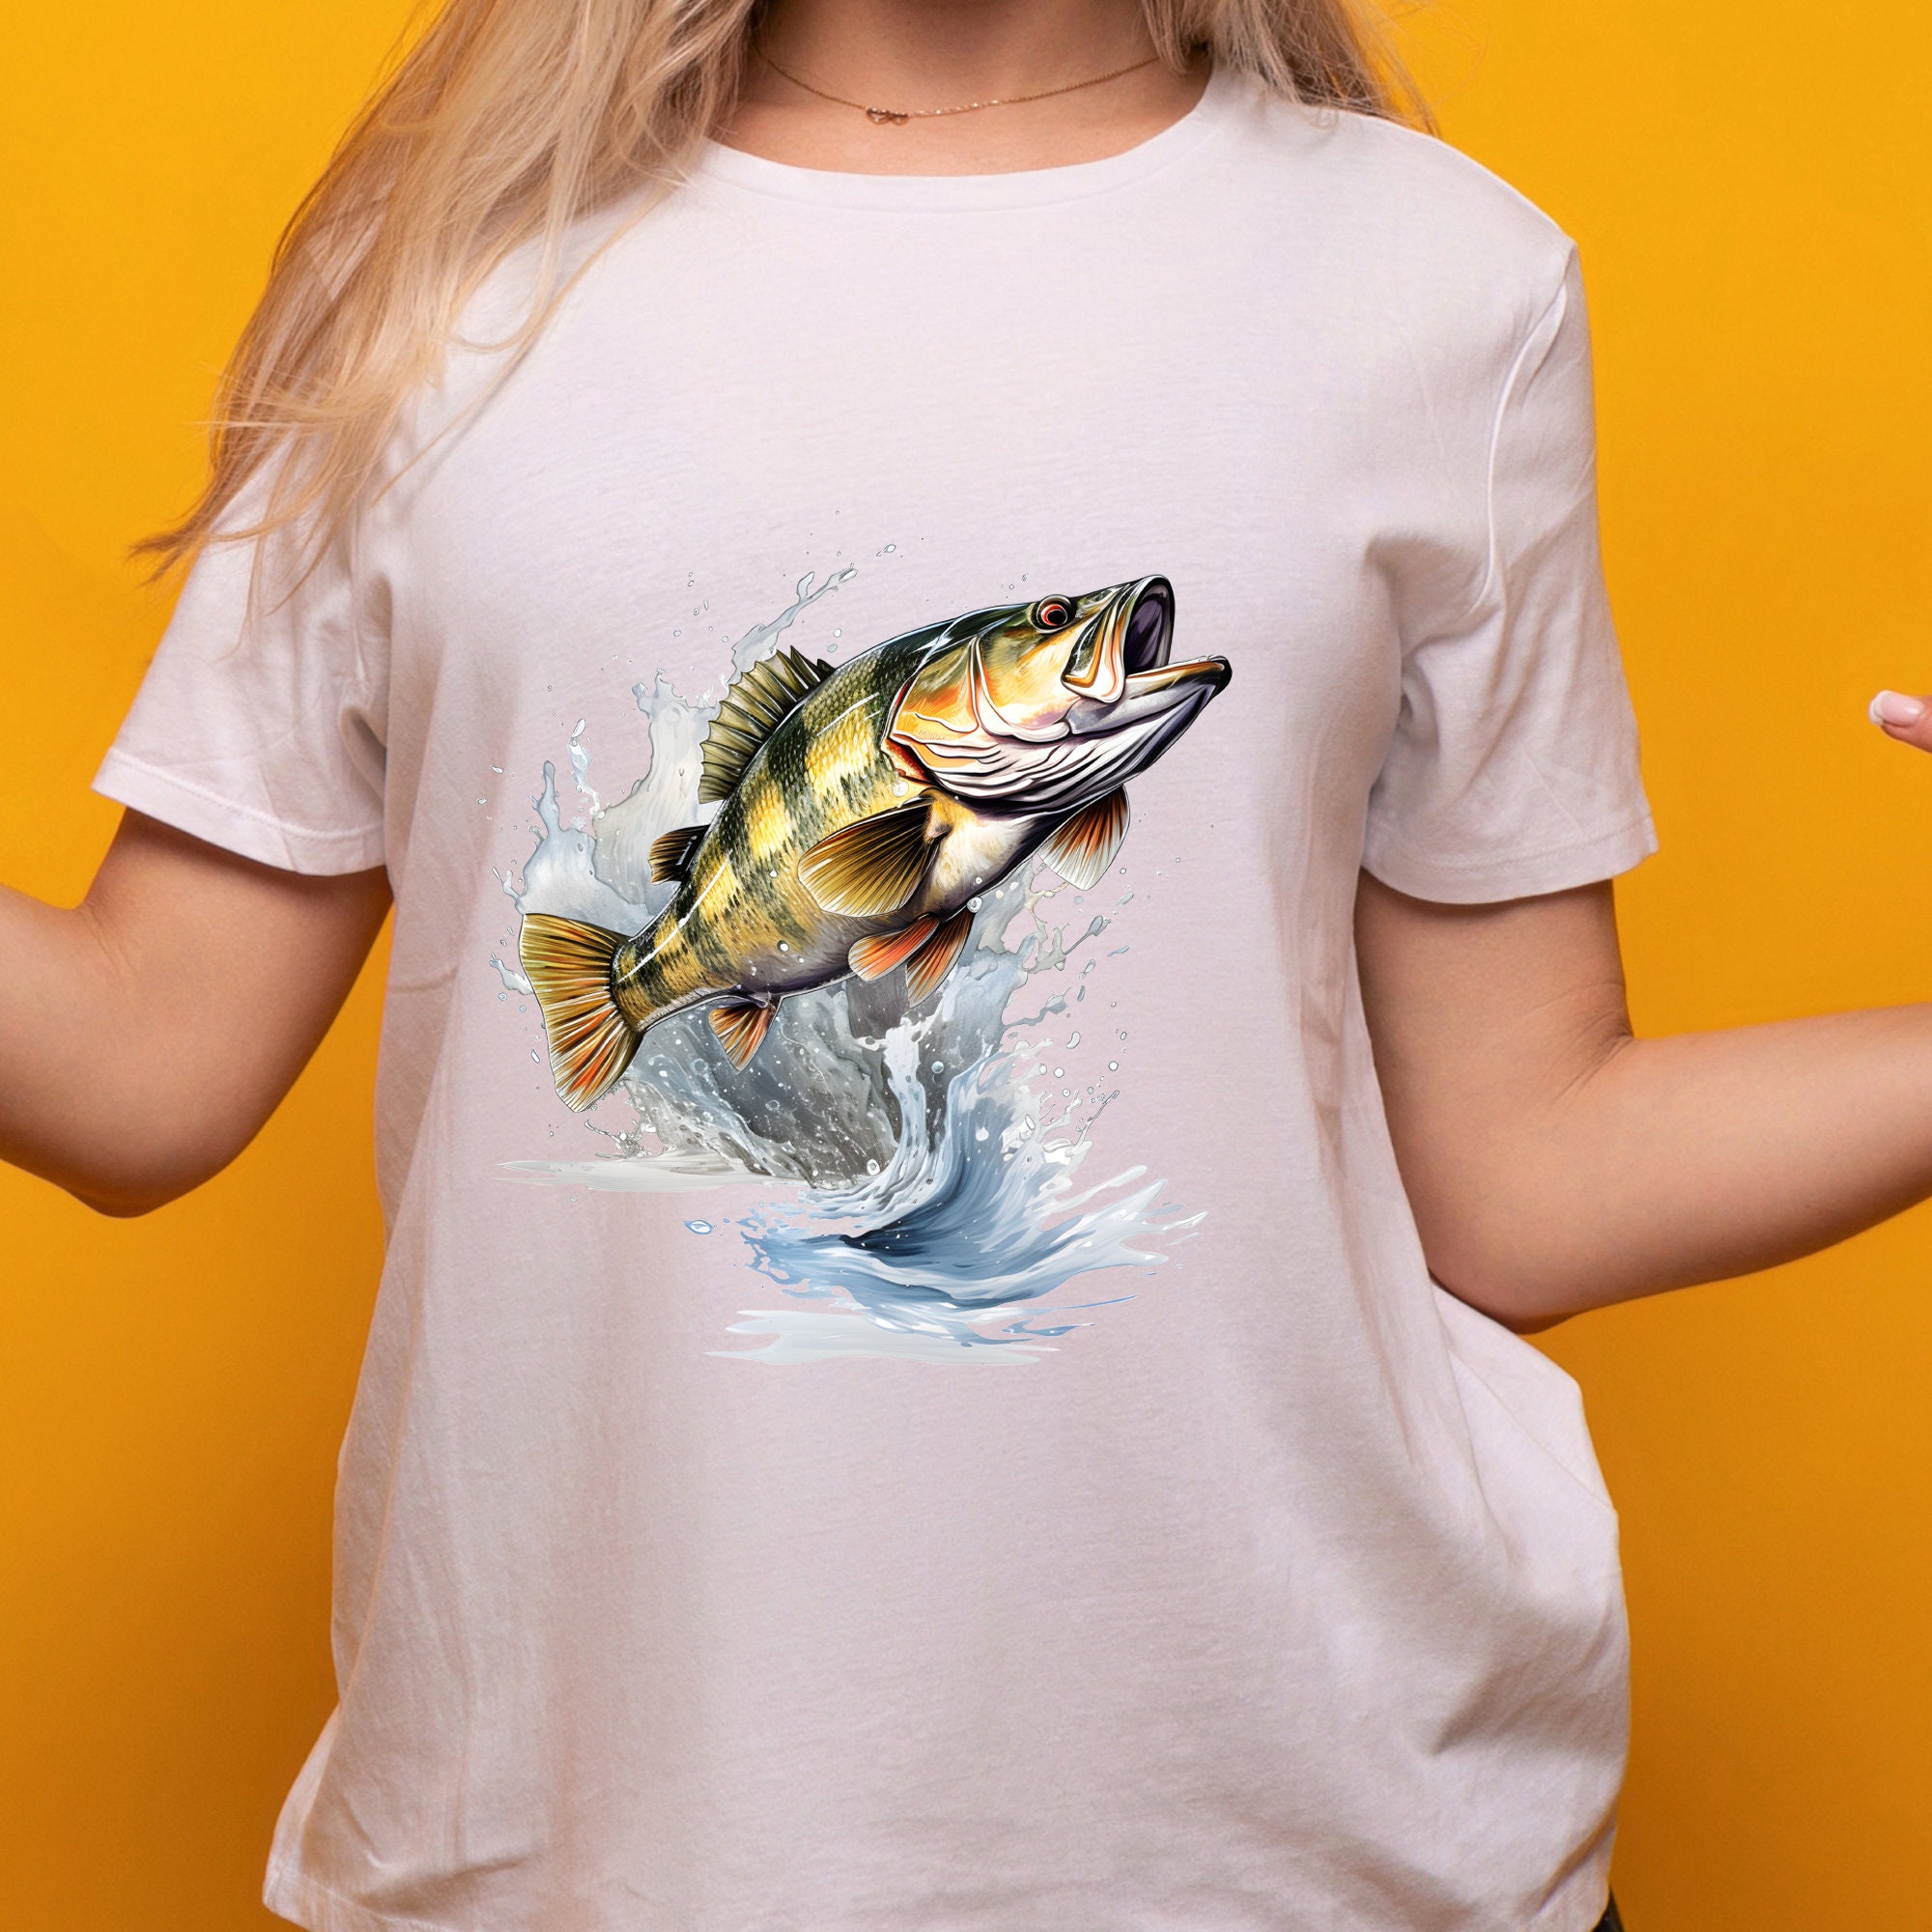 Jumping Bass Fish T-shirt, Big Bas Fish on the Air Tee, Largemouth